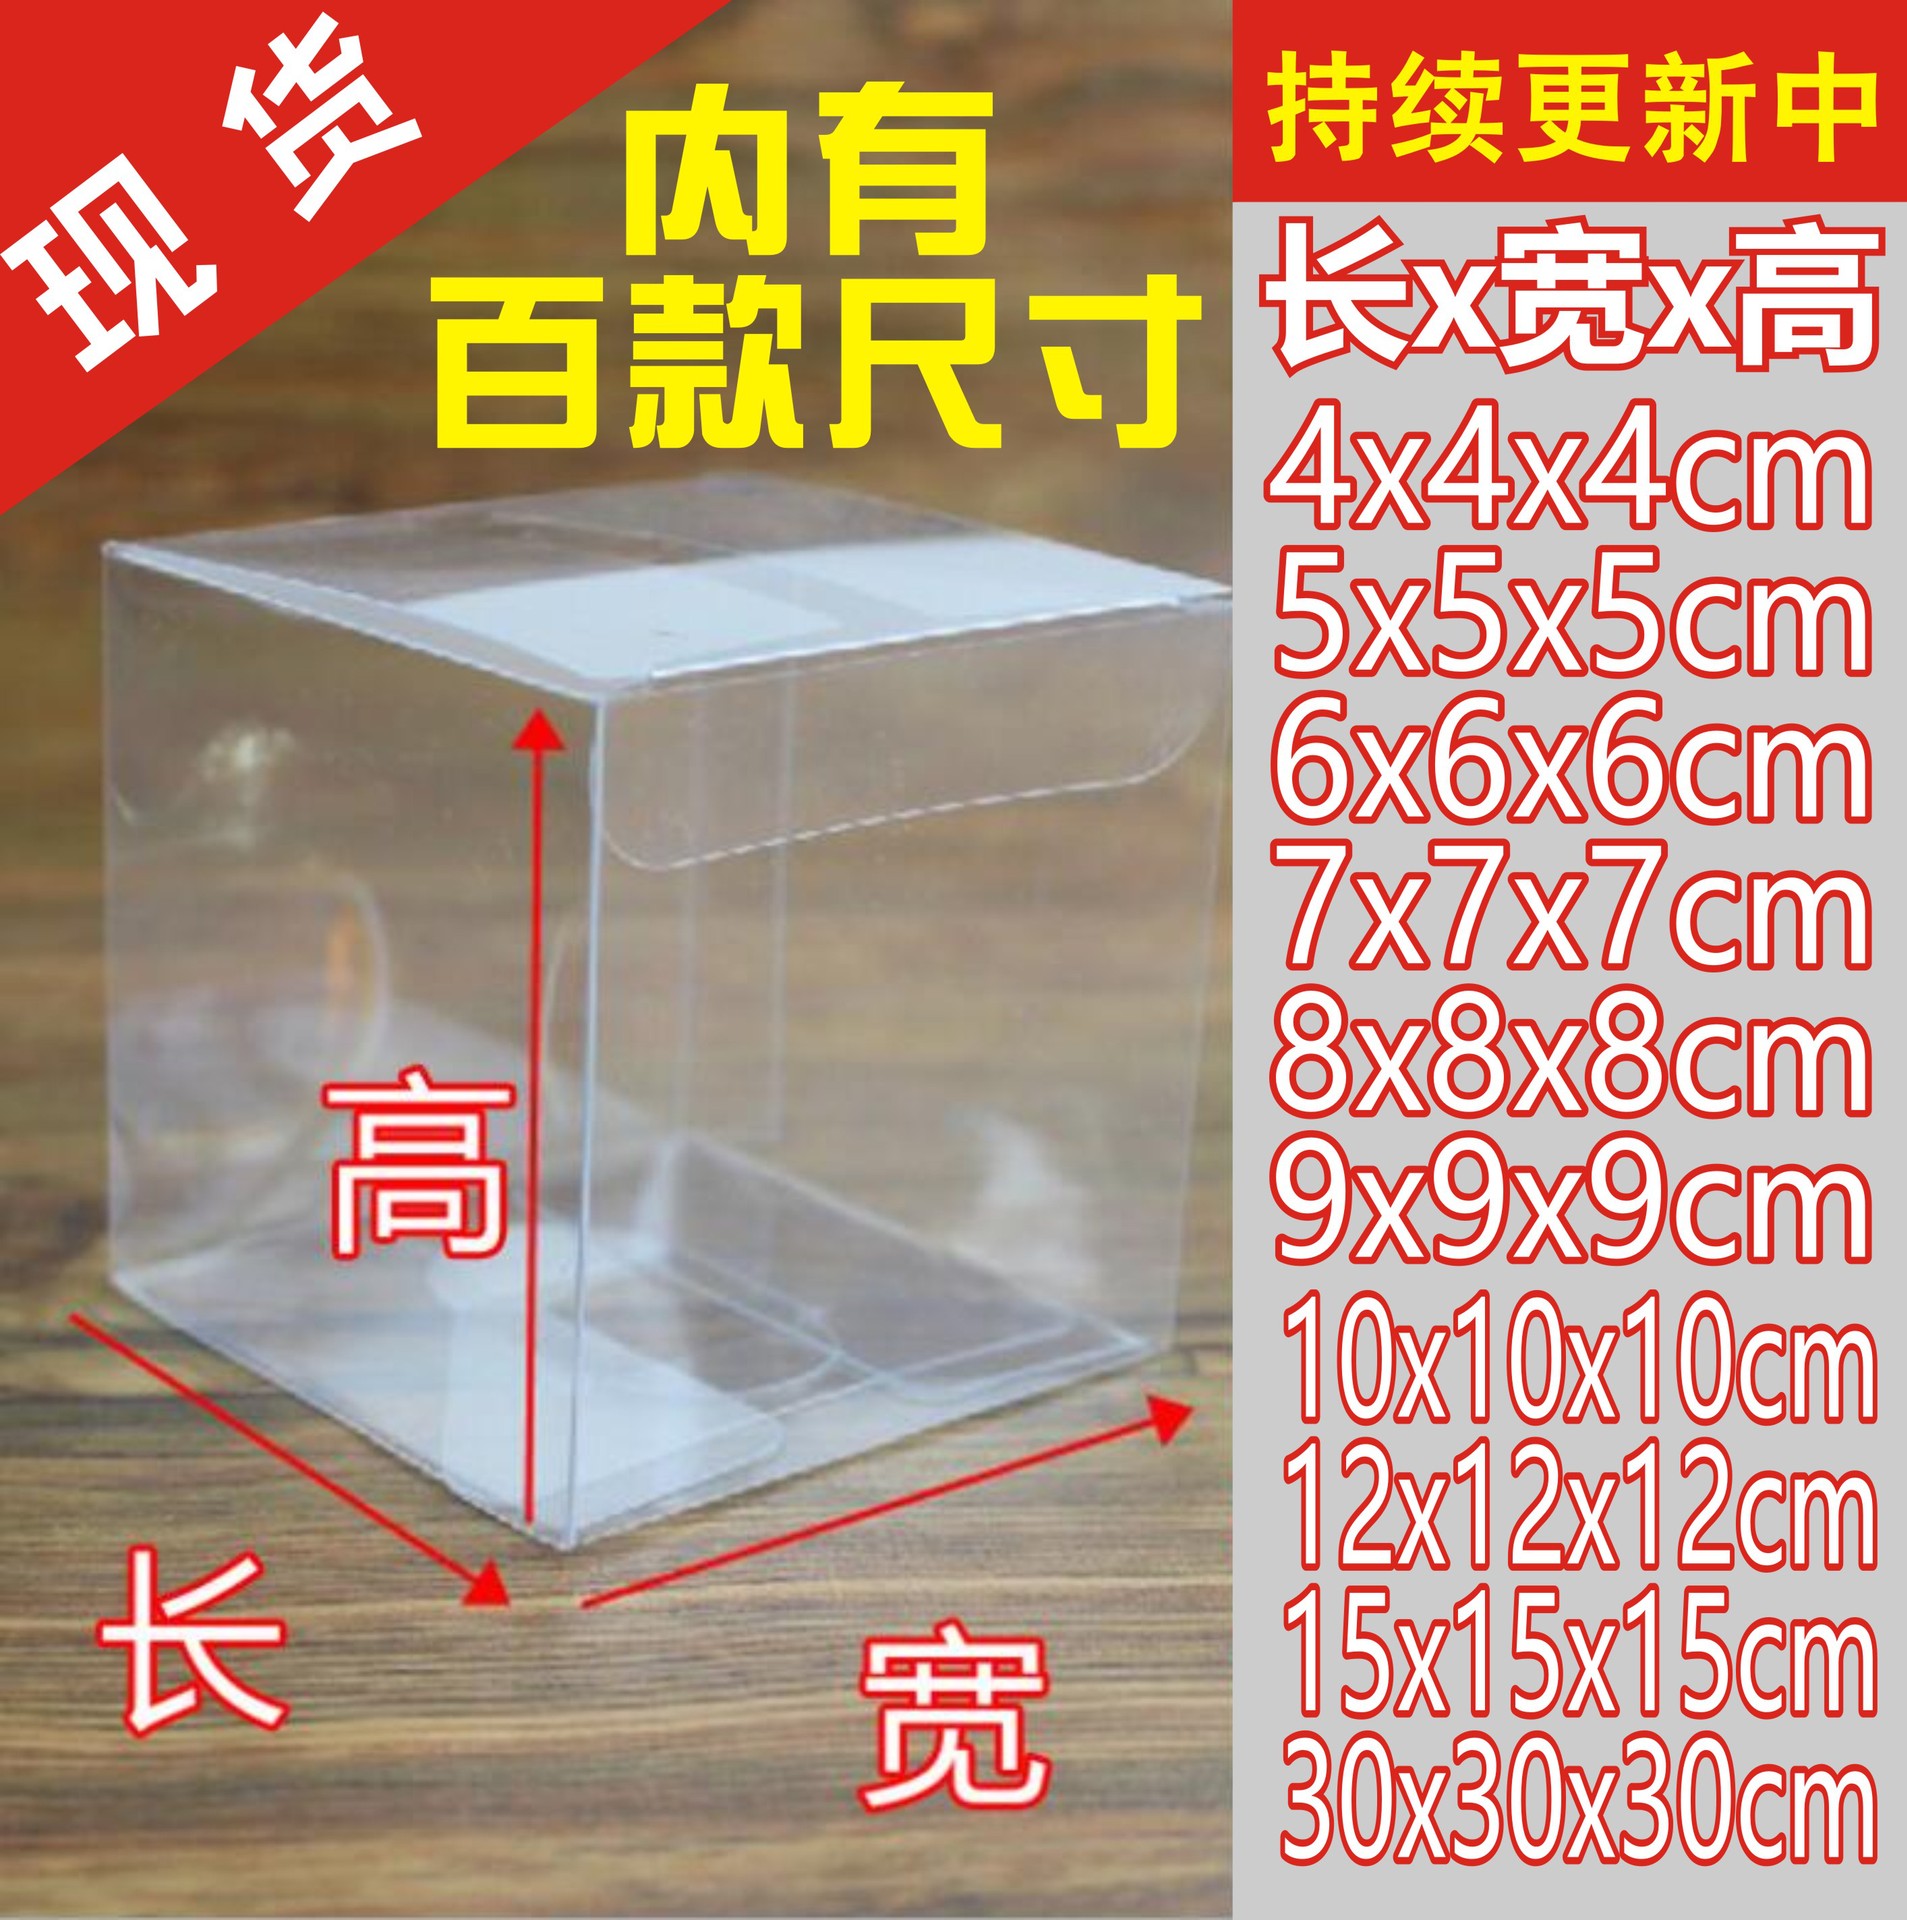 现货PET包装盒 正方形透明PVC包装盒现货批发 吸塑盒 磨砂PP盒